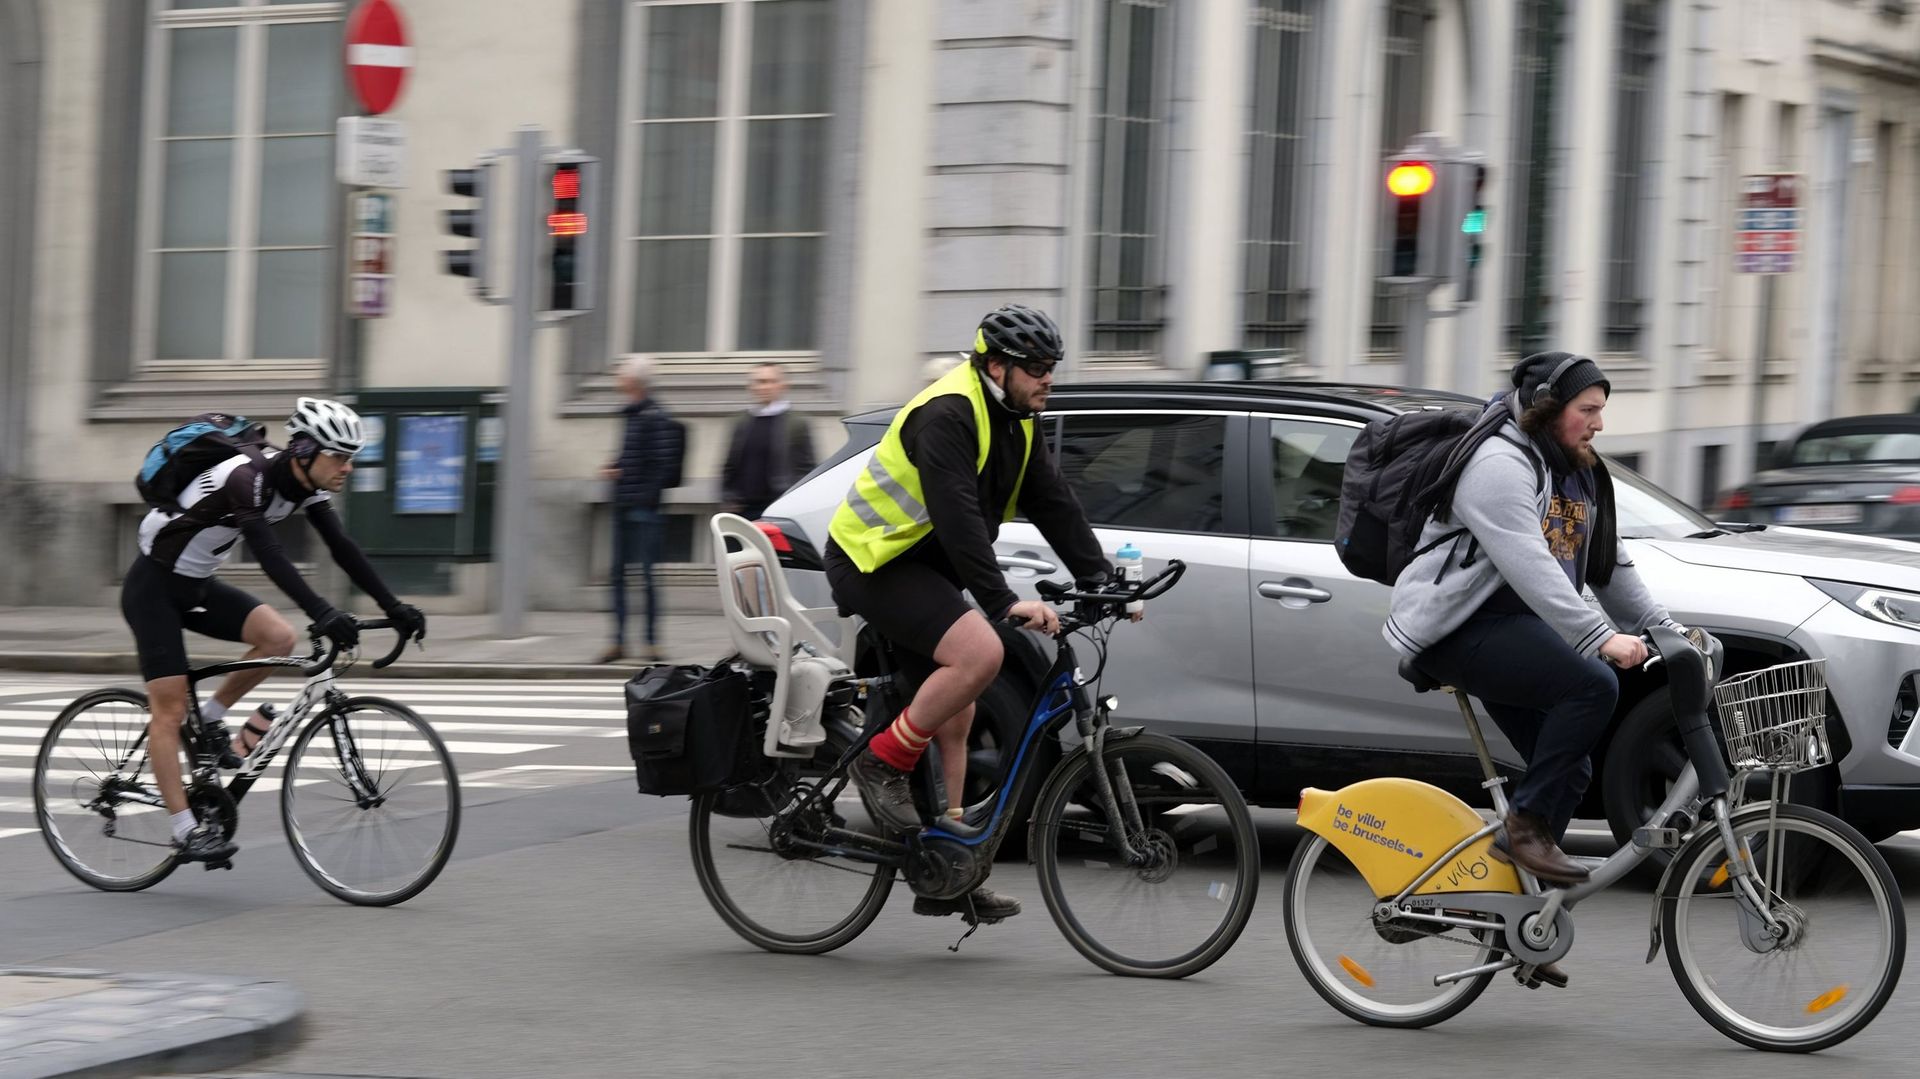 Acheter un vélo électrique coûte de l’argent. Mais des aides existent à Bruxelles.